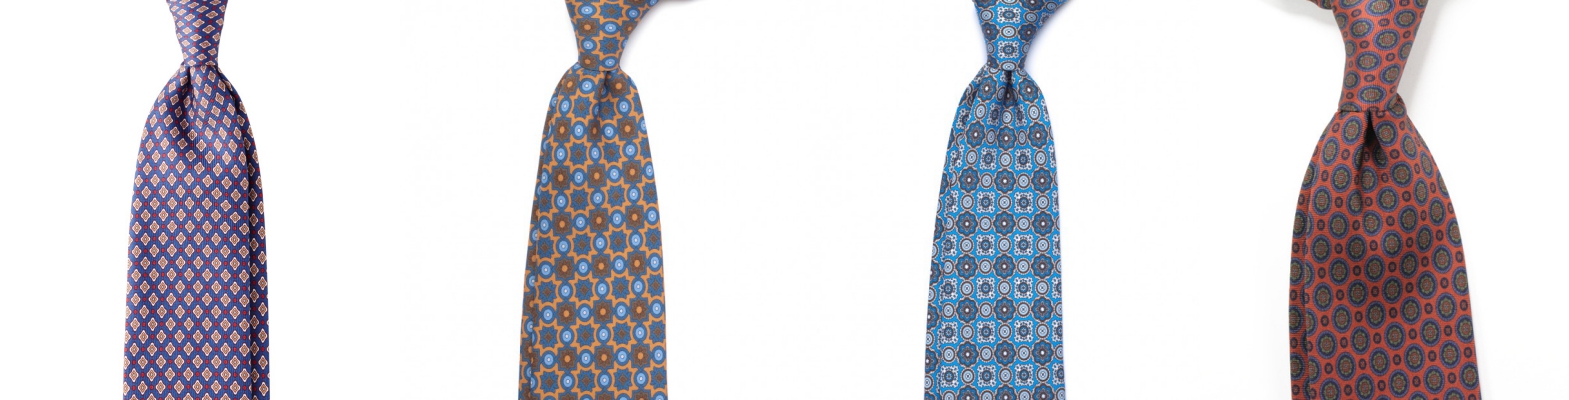 Señores de calidad fabricado a mano corbata marrón Handmade tie pd-8435 azul